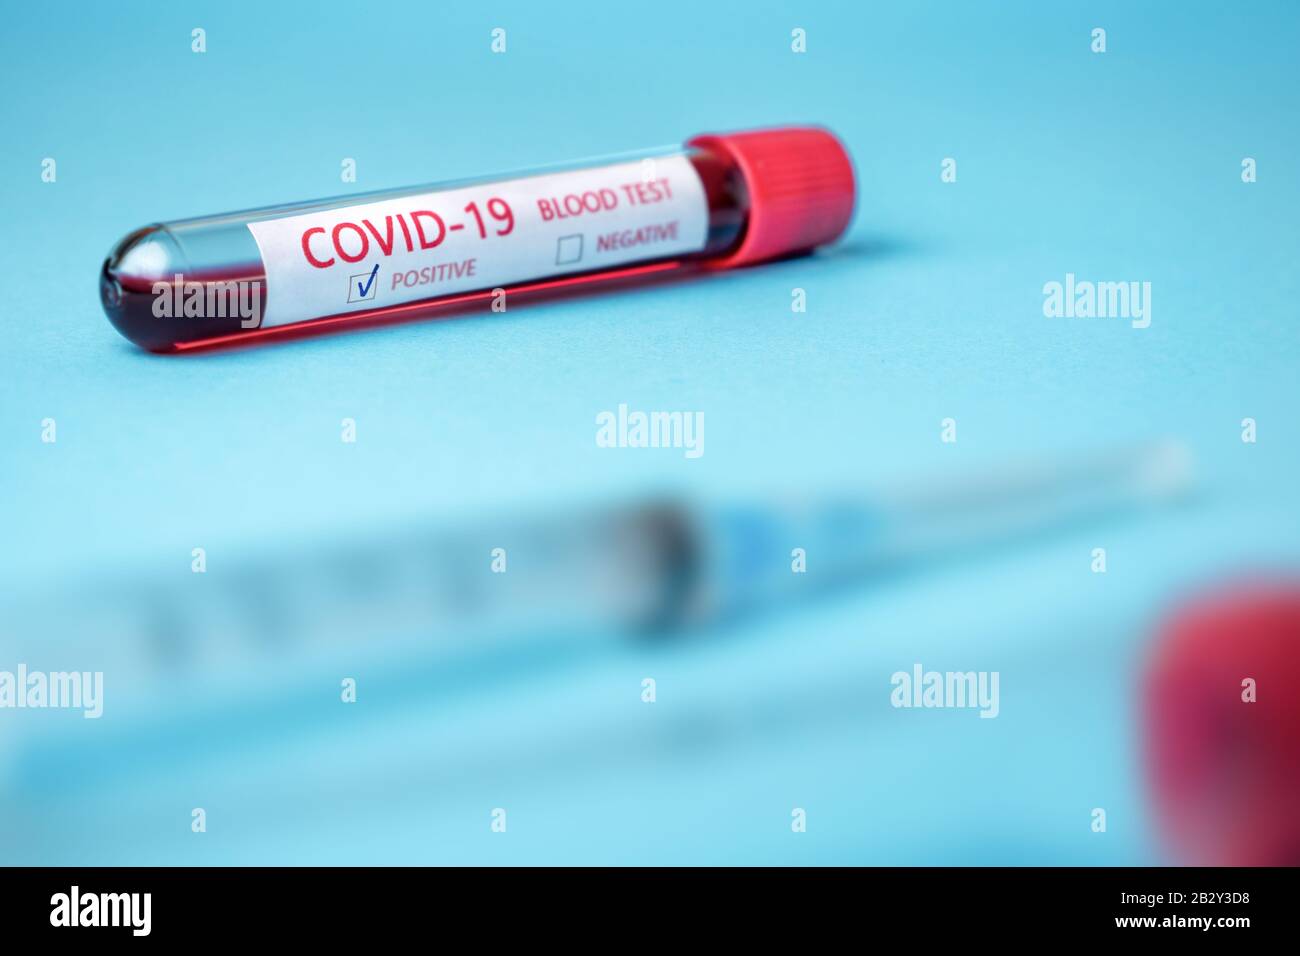 Provetta con campione di sangue per il test COVID-19, nuovo coronavirus 2019 trovato a Wuhan, Cina. Malattia di coronavirus: COVID-19. Sfondo blu Foto Stock